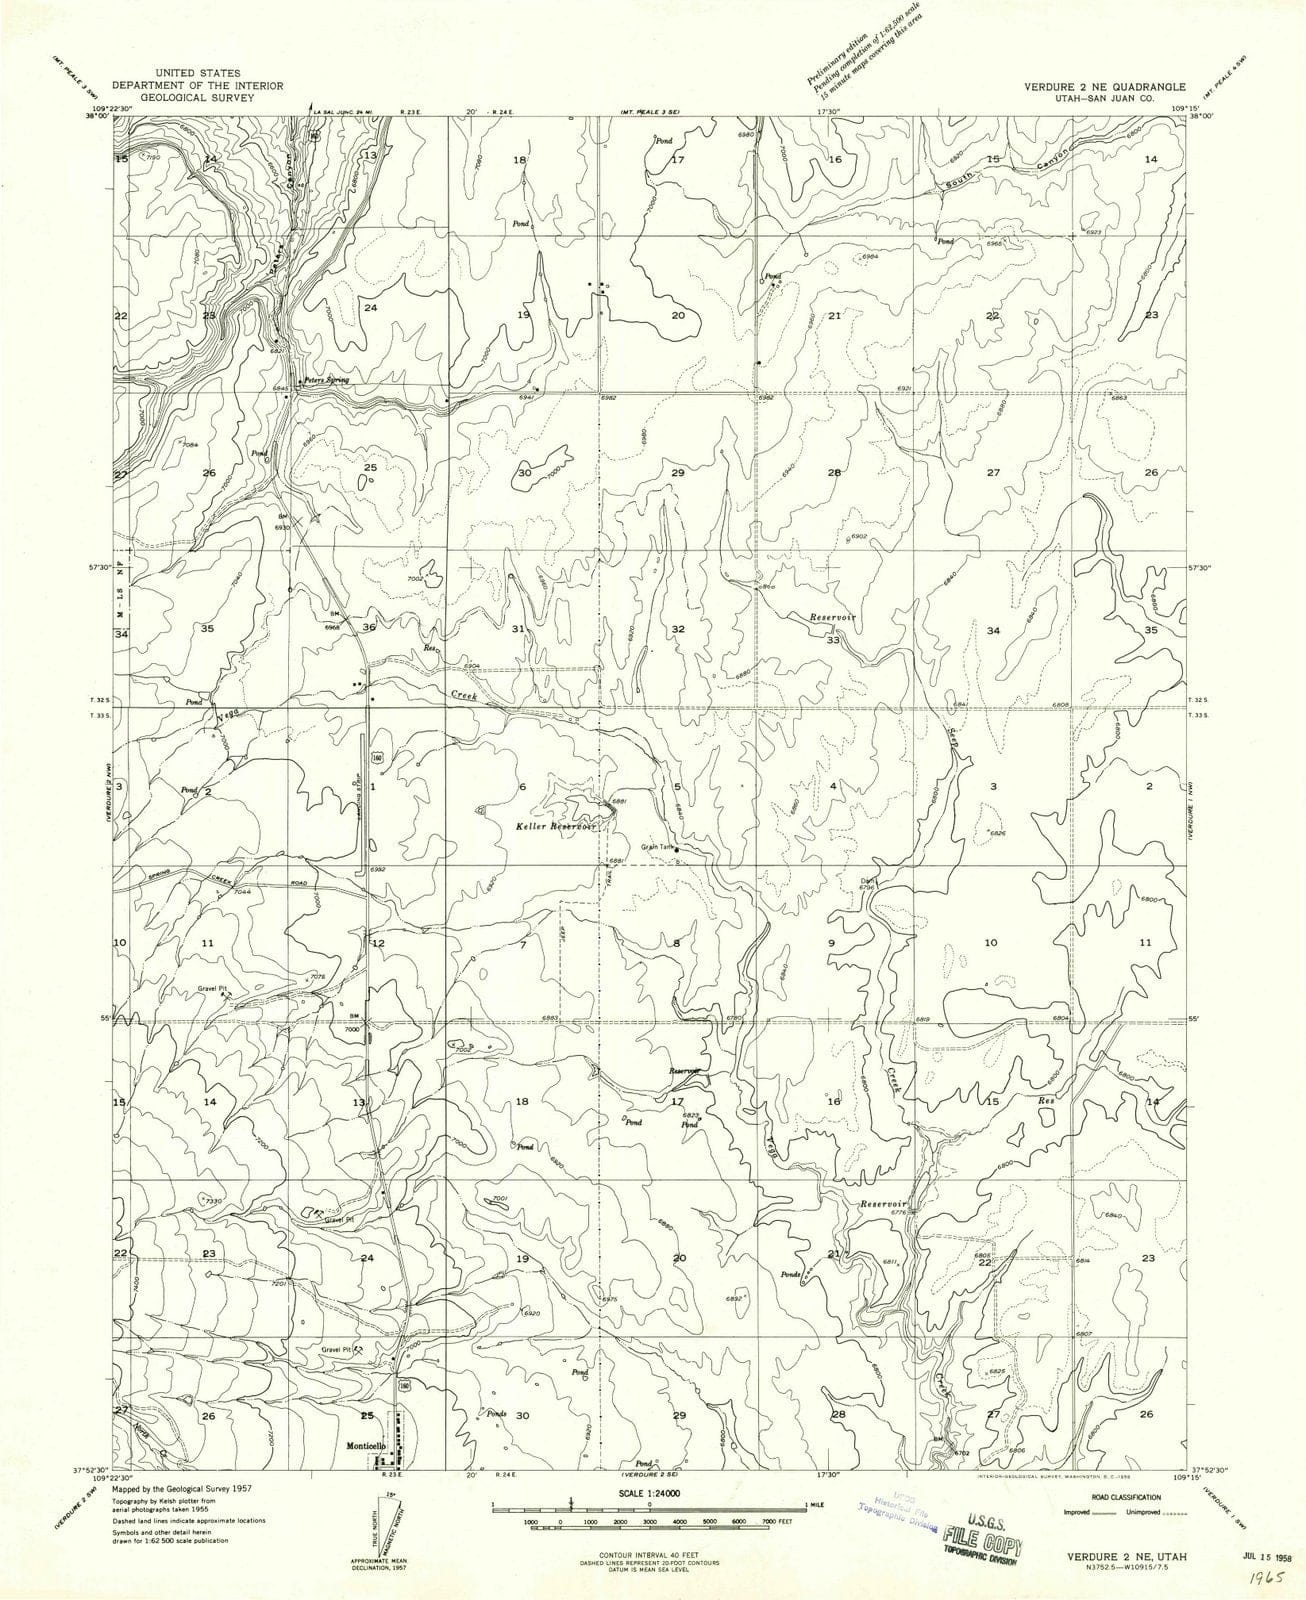 1958 Verdure 2, UT - Utah - USGS Topographic Map